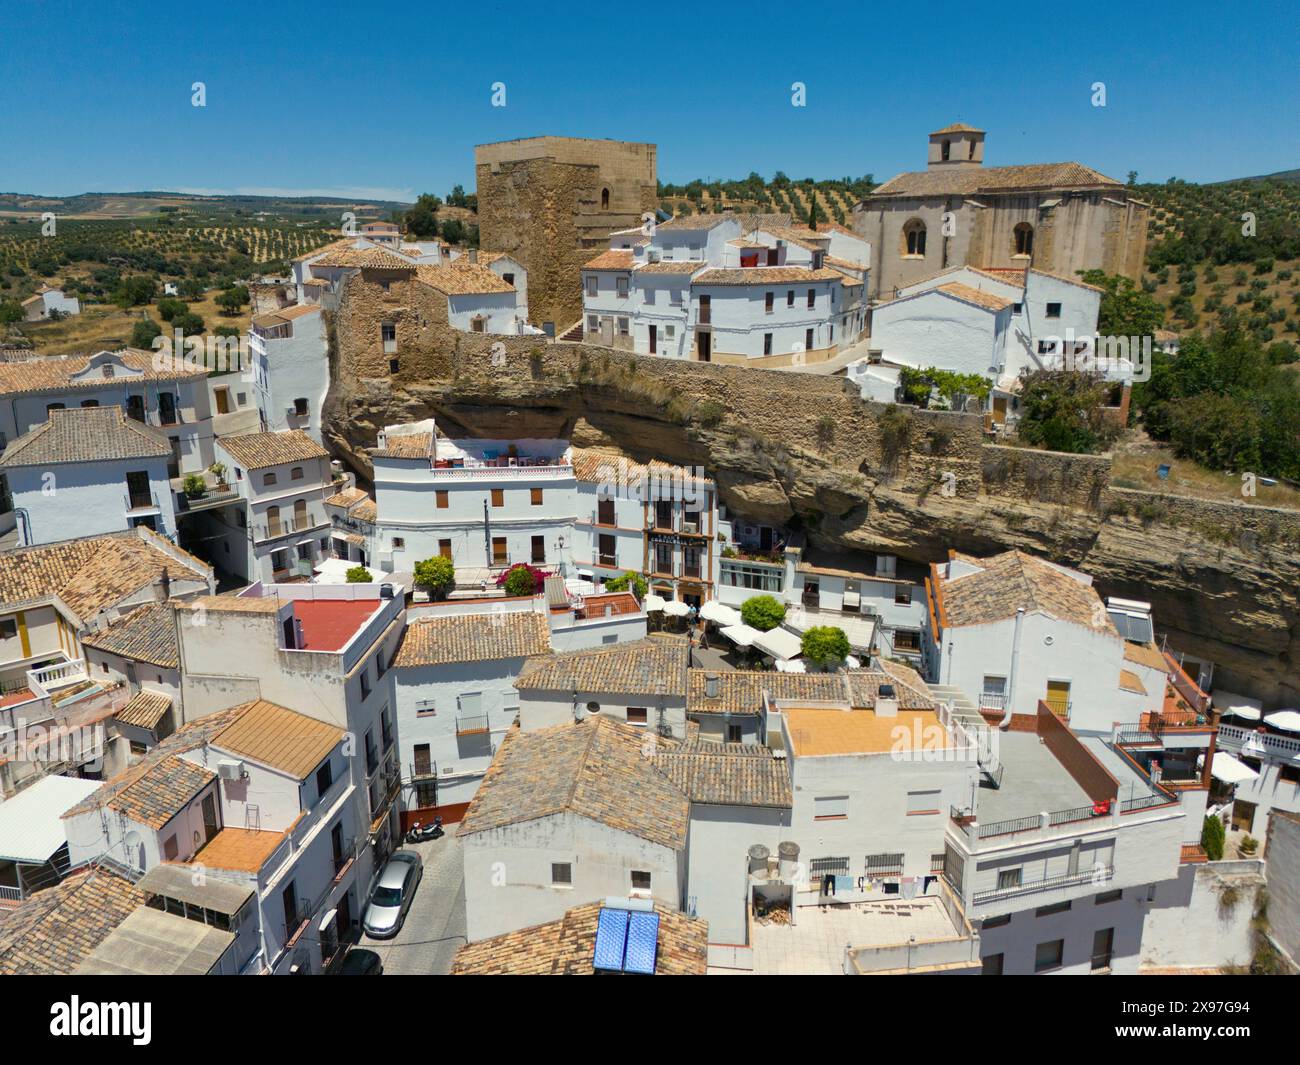 Vista aerea di un villaggio spagnolo con edifici bianchi, edifici storici, chiese e oliveti in un paesaggio mediterraneo, vista aerea, grotta Foto Stock